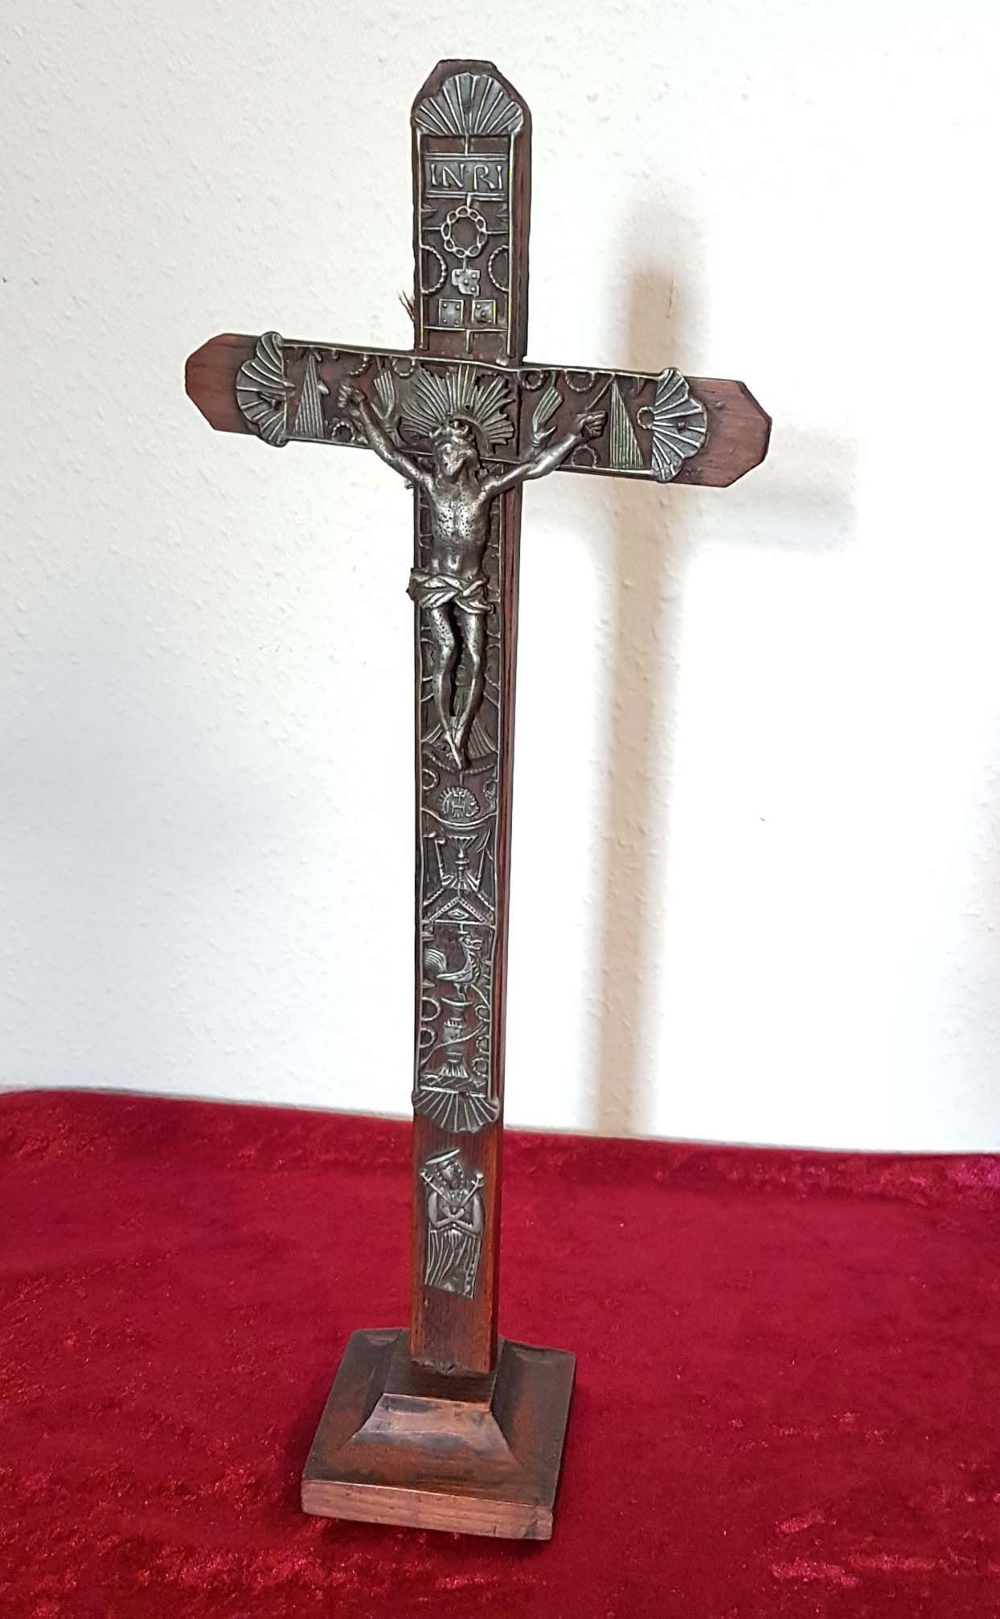 Tischkreuz Herrgotts Winkel Marterl Kruzifix Kreuz Jesus Christus Biedermeier